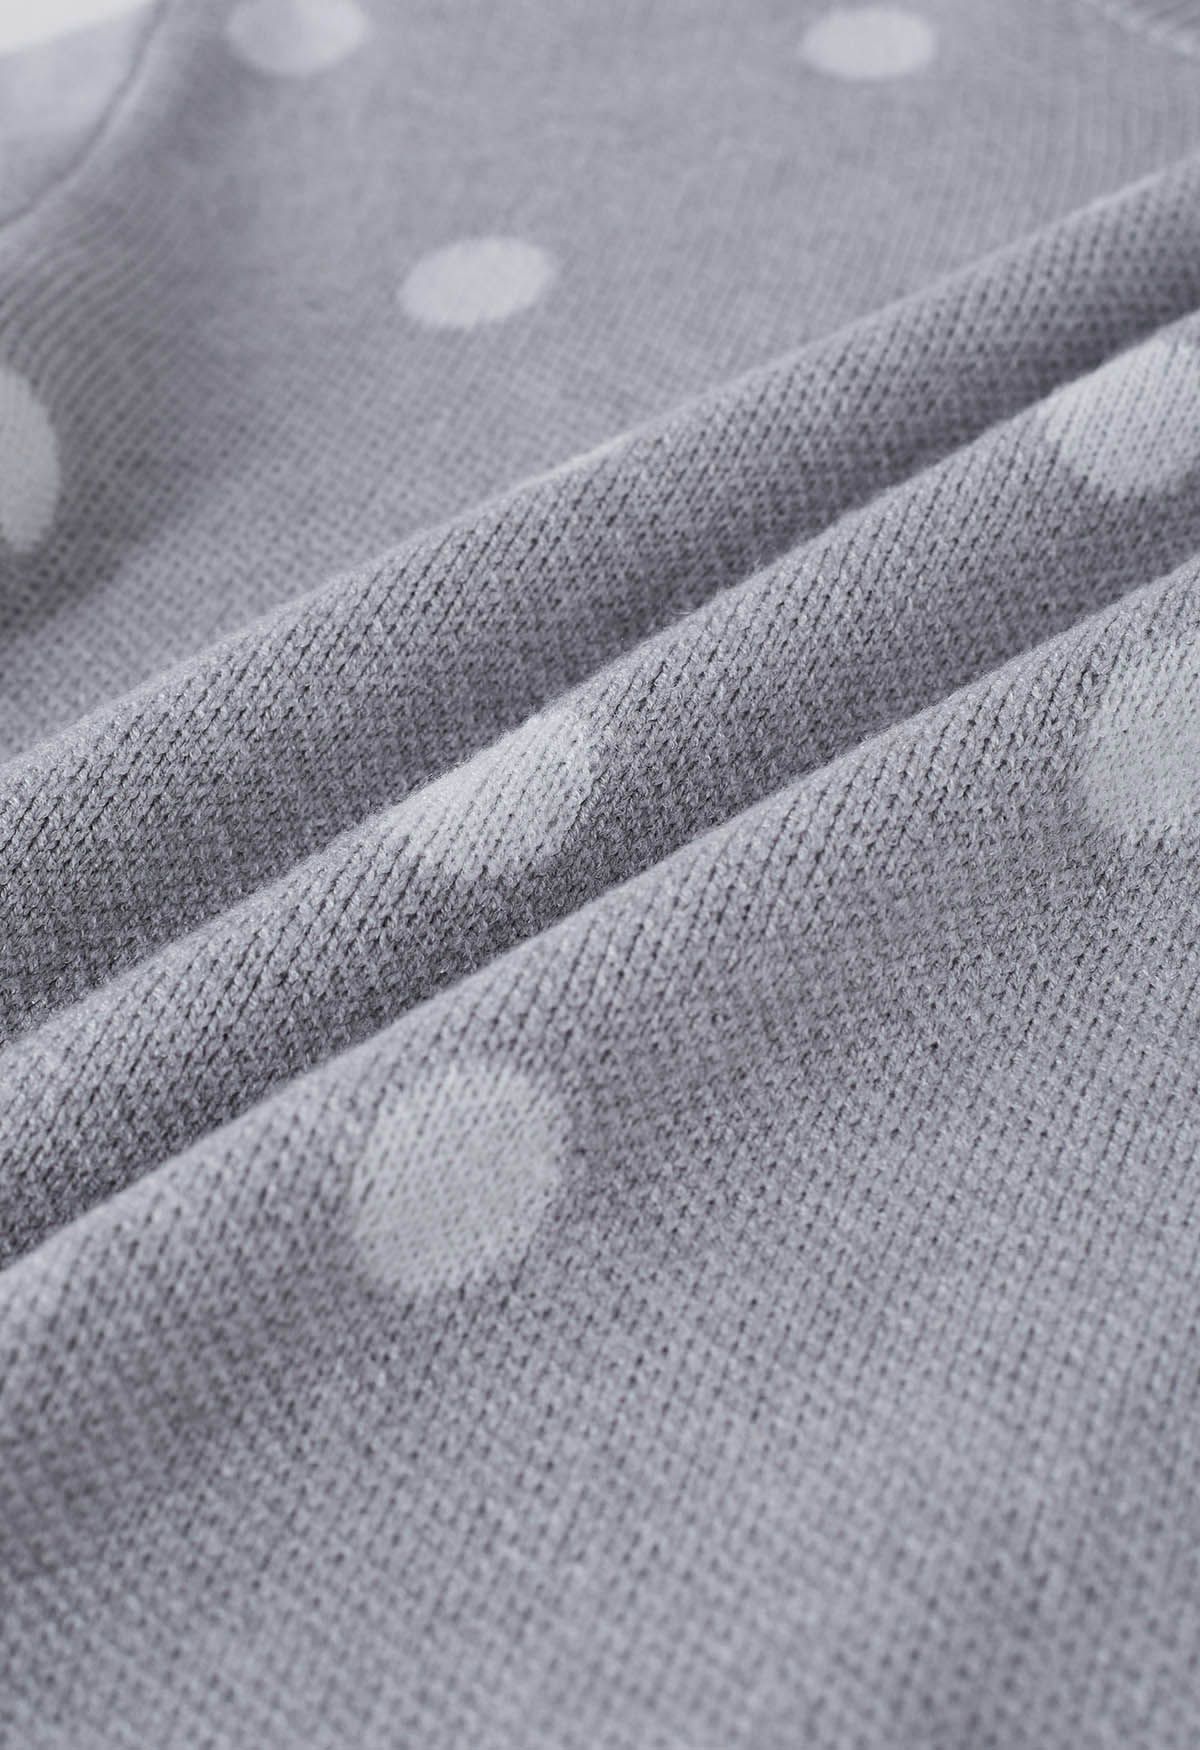 Adorable suéter de punto con cuello simulado y lunares en gris